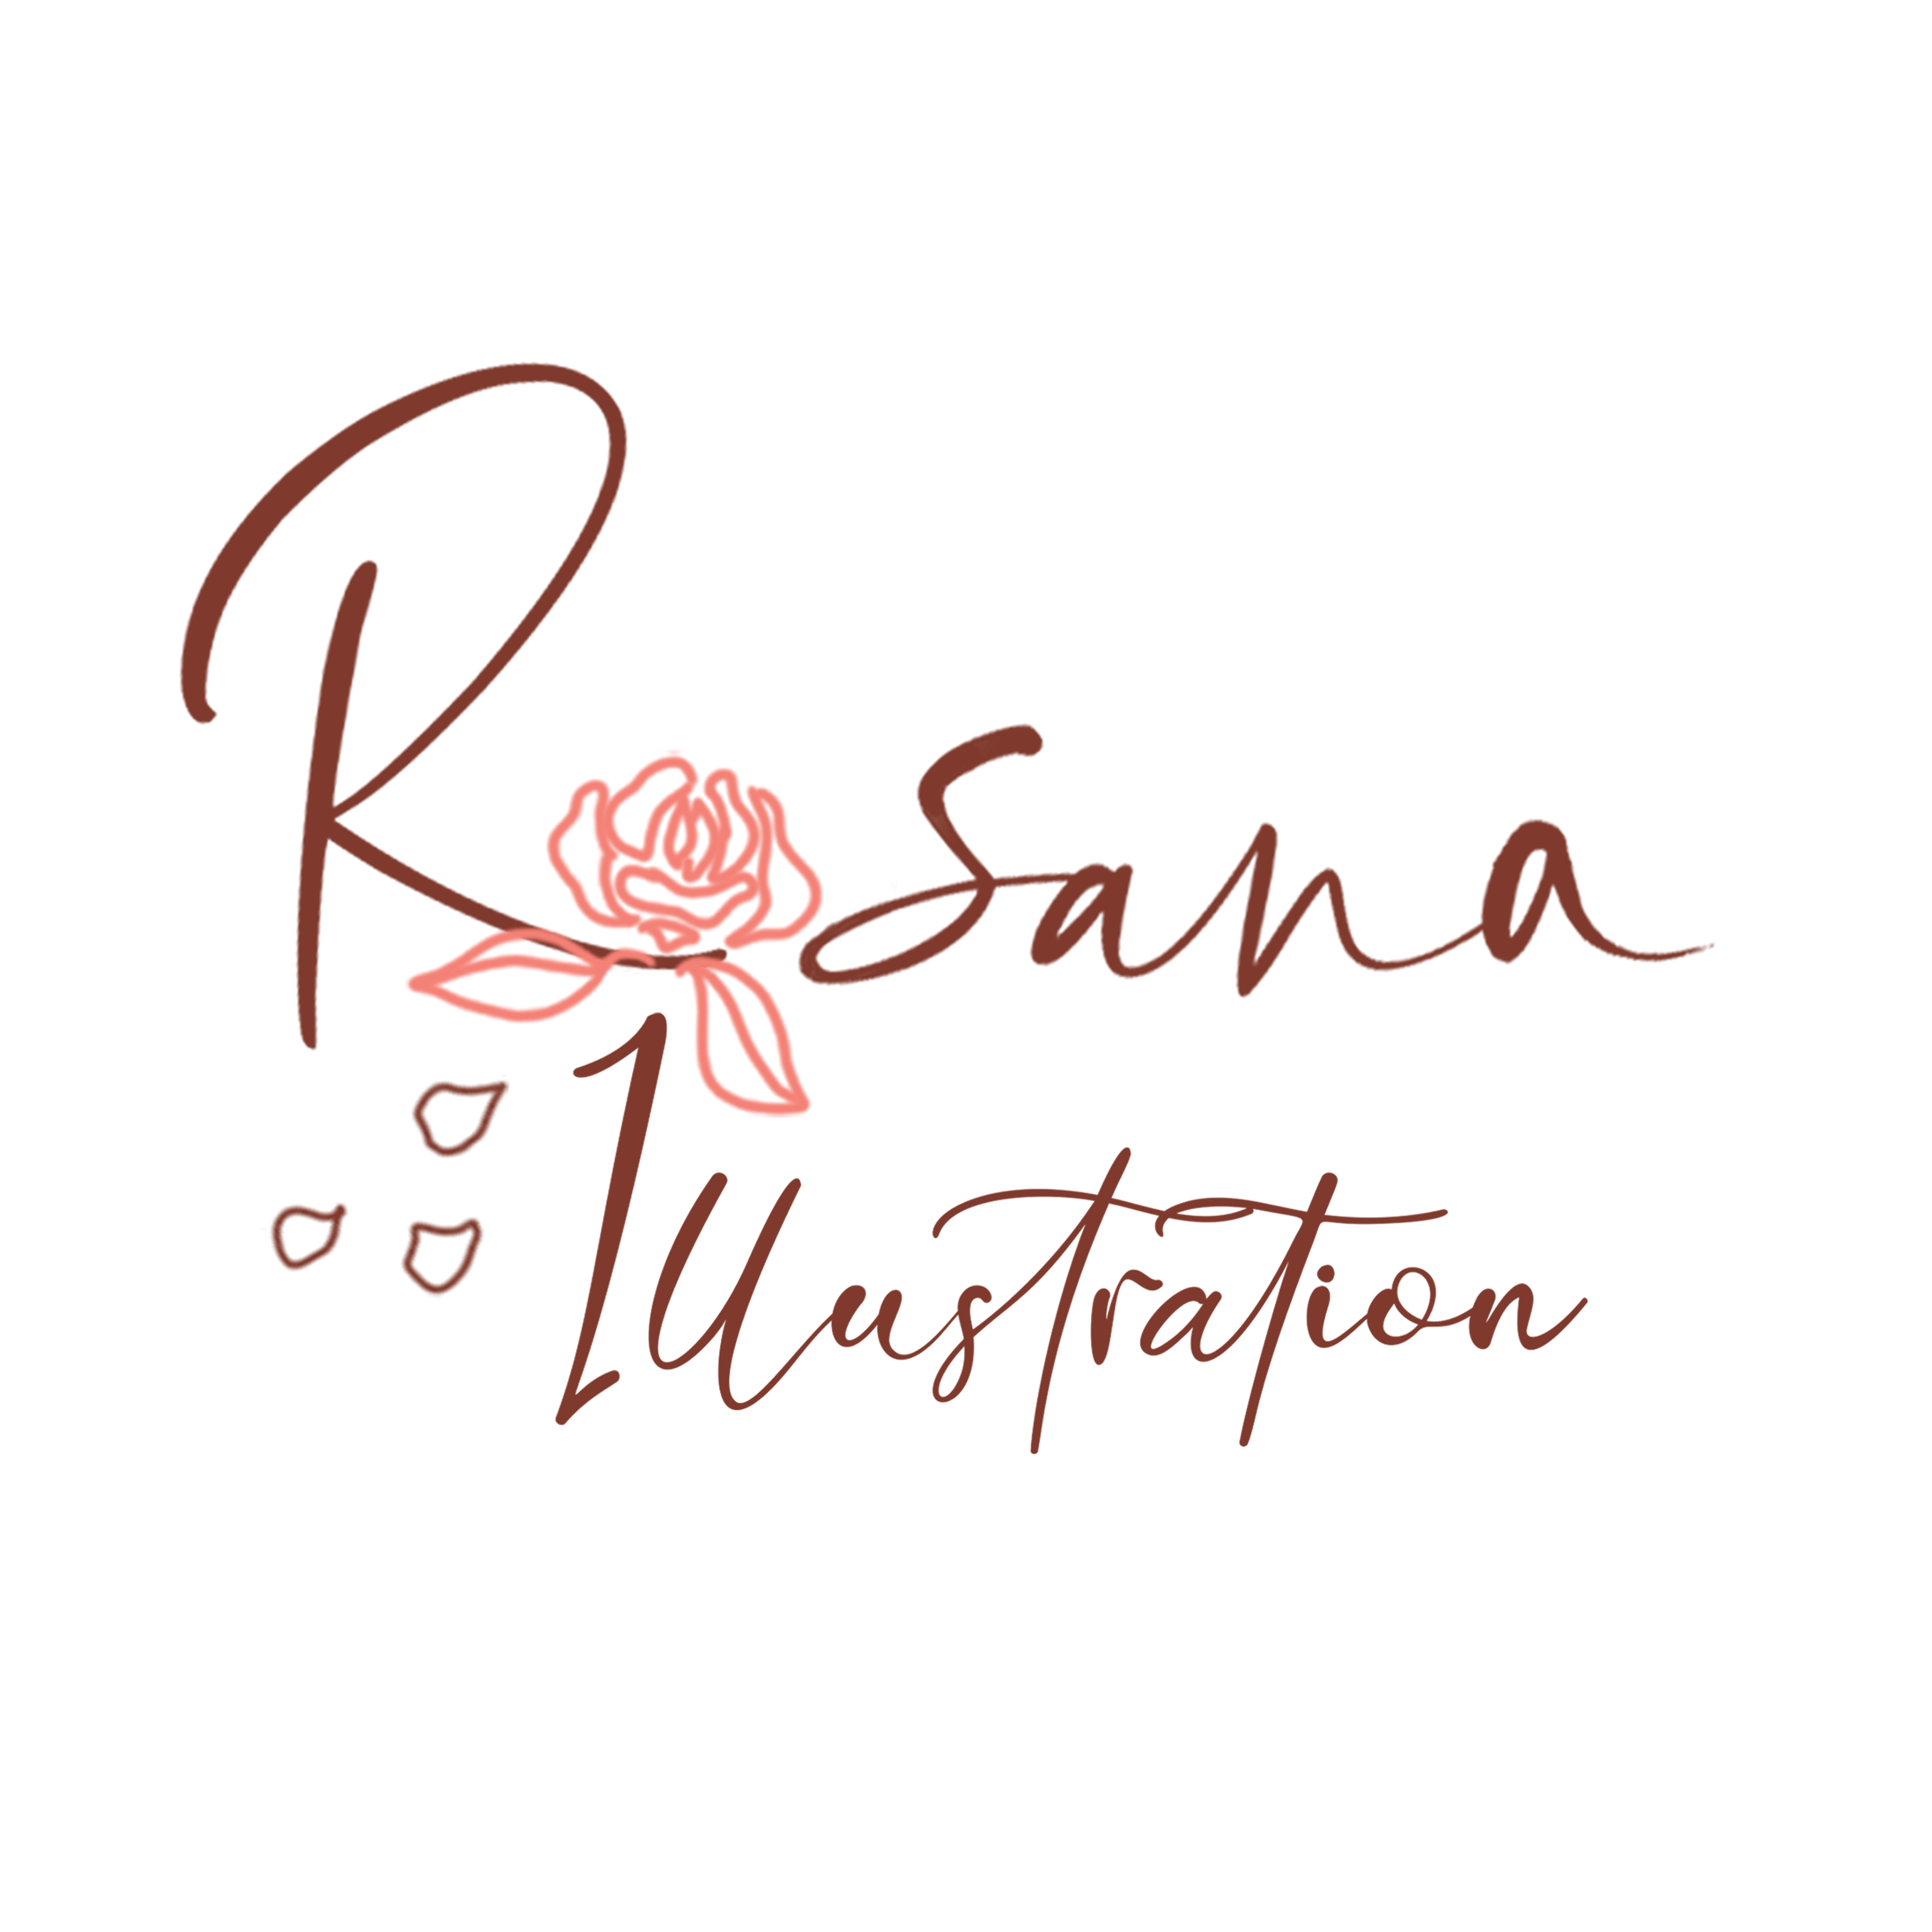 logo du site Rosana Illustration agrandi, formé de lettres brun-bordeaux, avec un tracé rose qui forme une rose à la place du O de Rosana et trois pétales roses qui tombent, par Rosana Illustration (artiste Nathalie Goullioud)